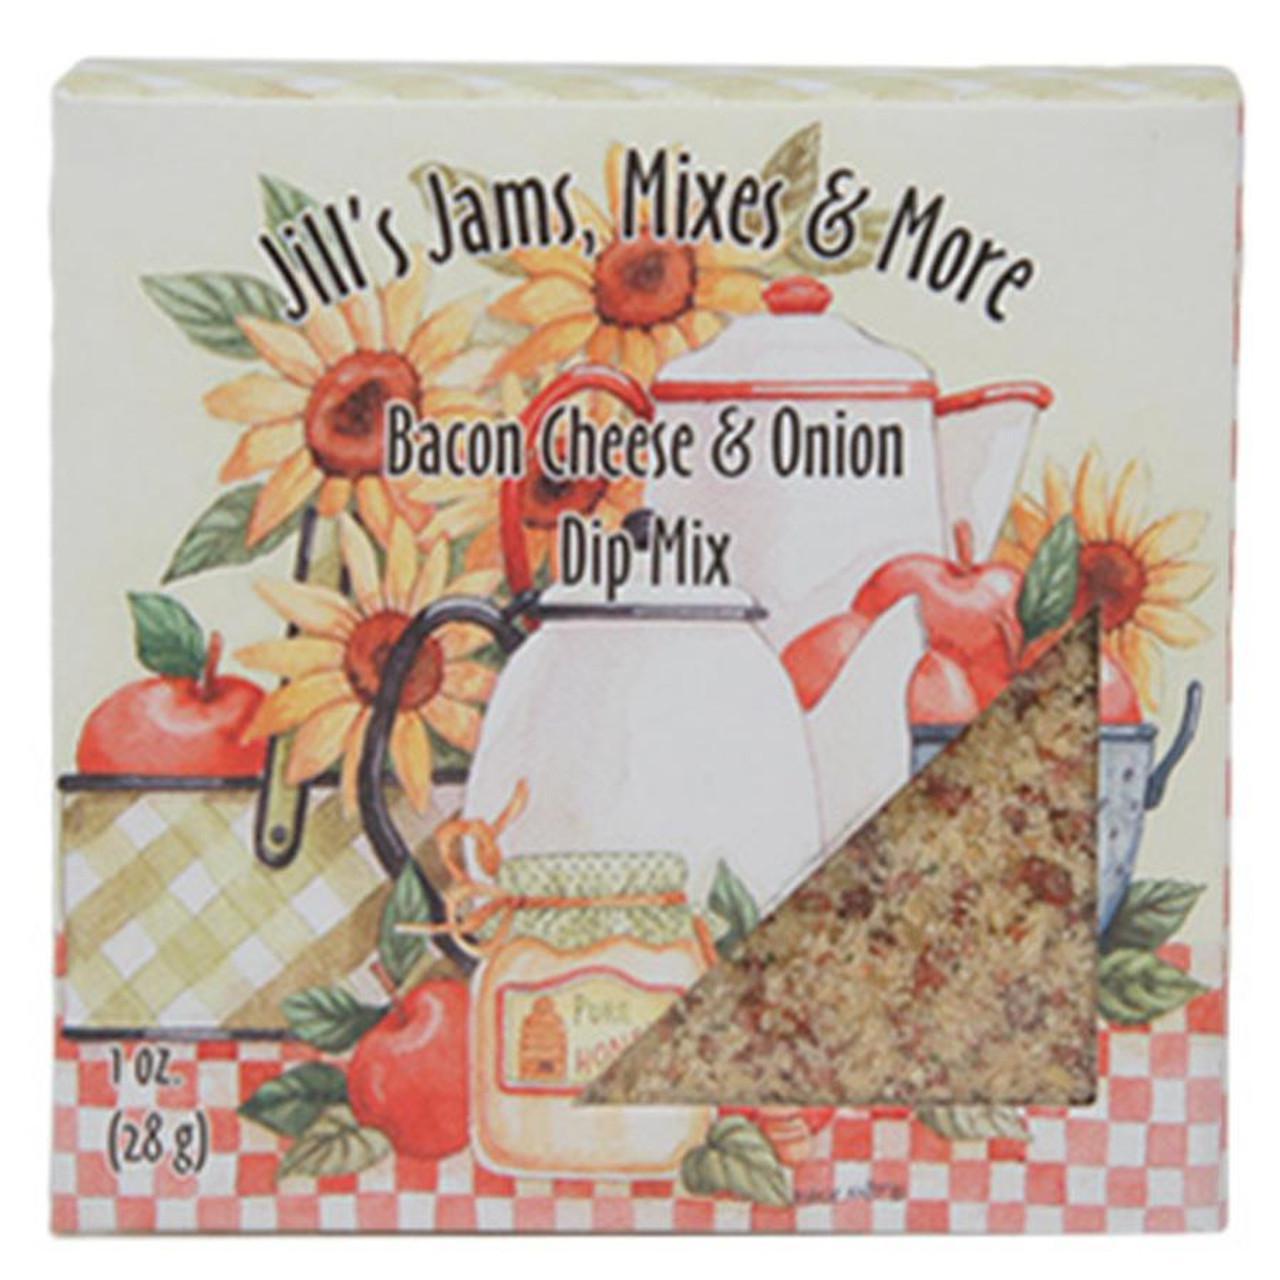 Jill's Jams, Mixes & More Bacon Cheese & Onion Dip Mix